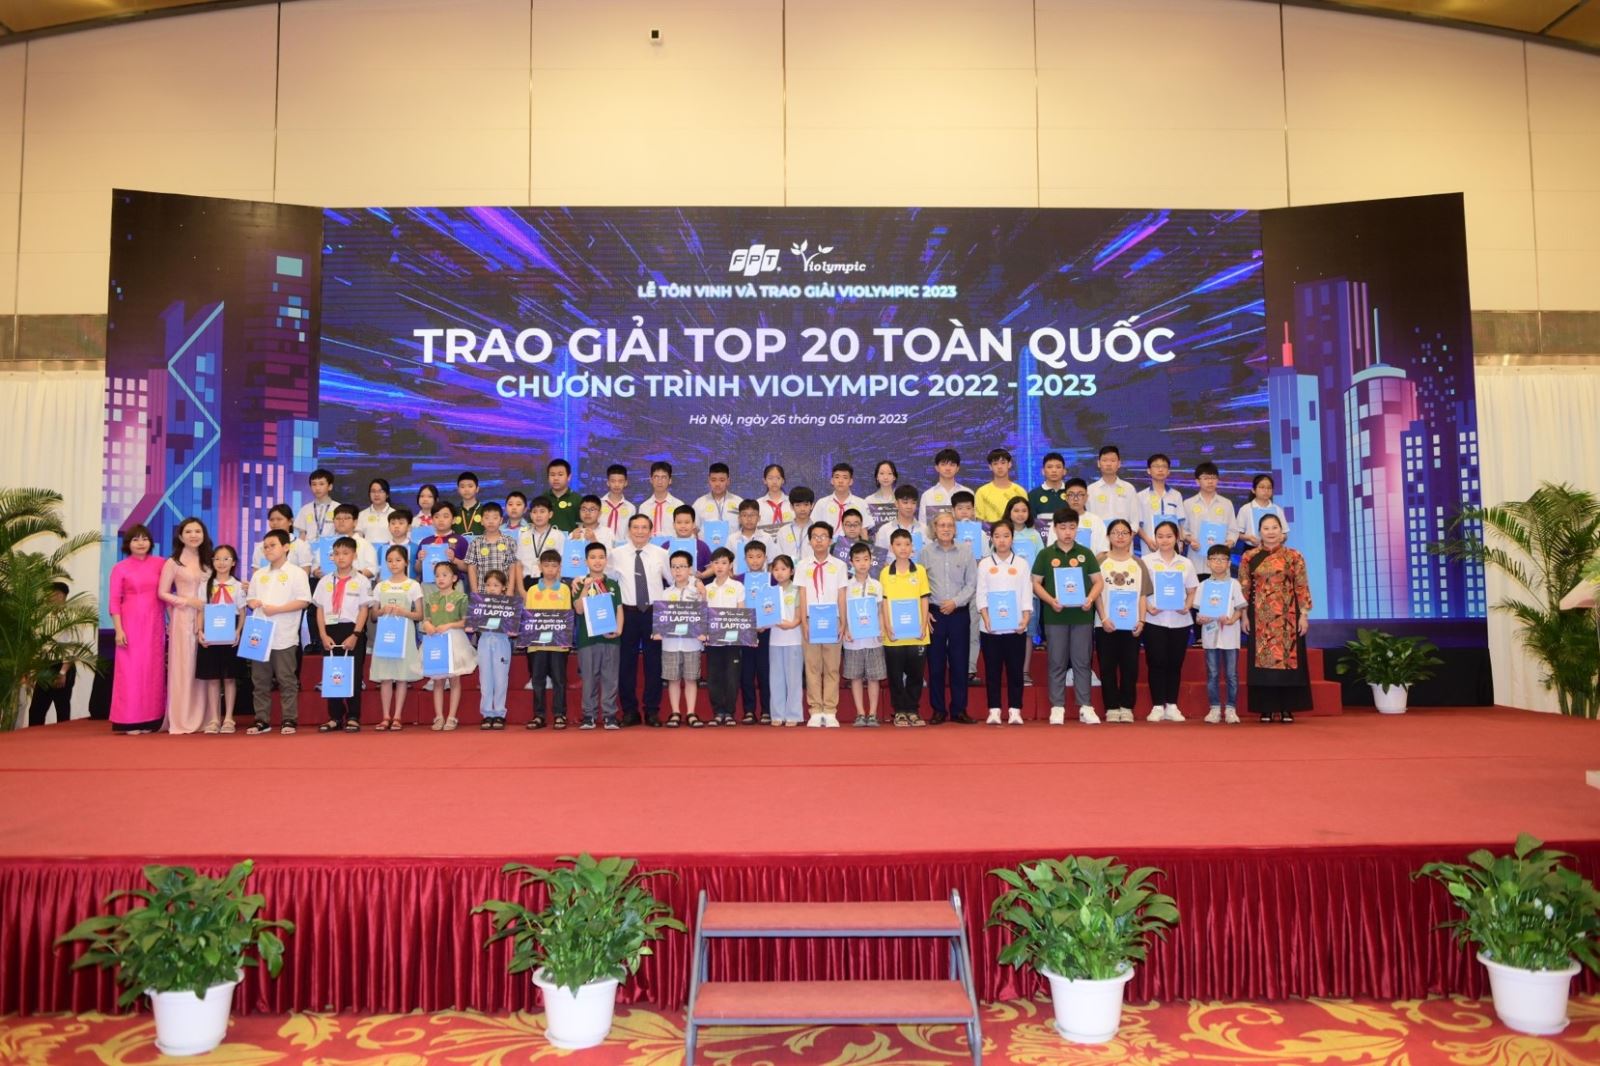  Lễ trao giải Violympic năm học 2022-2023 vừa diễn ra tại Hà Nội.